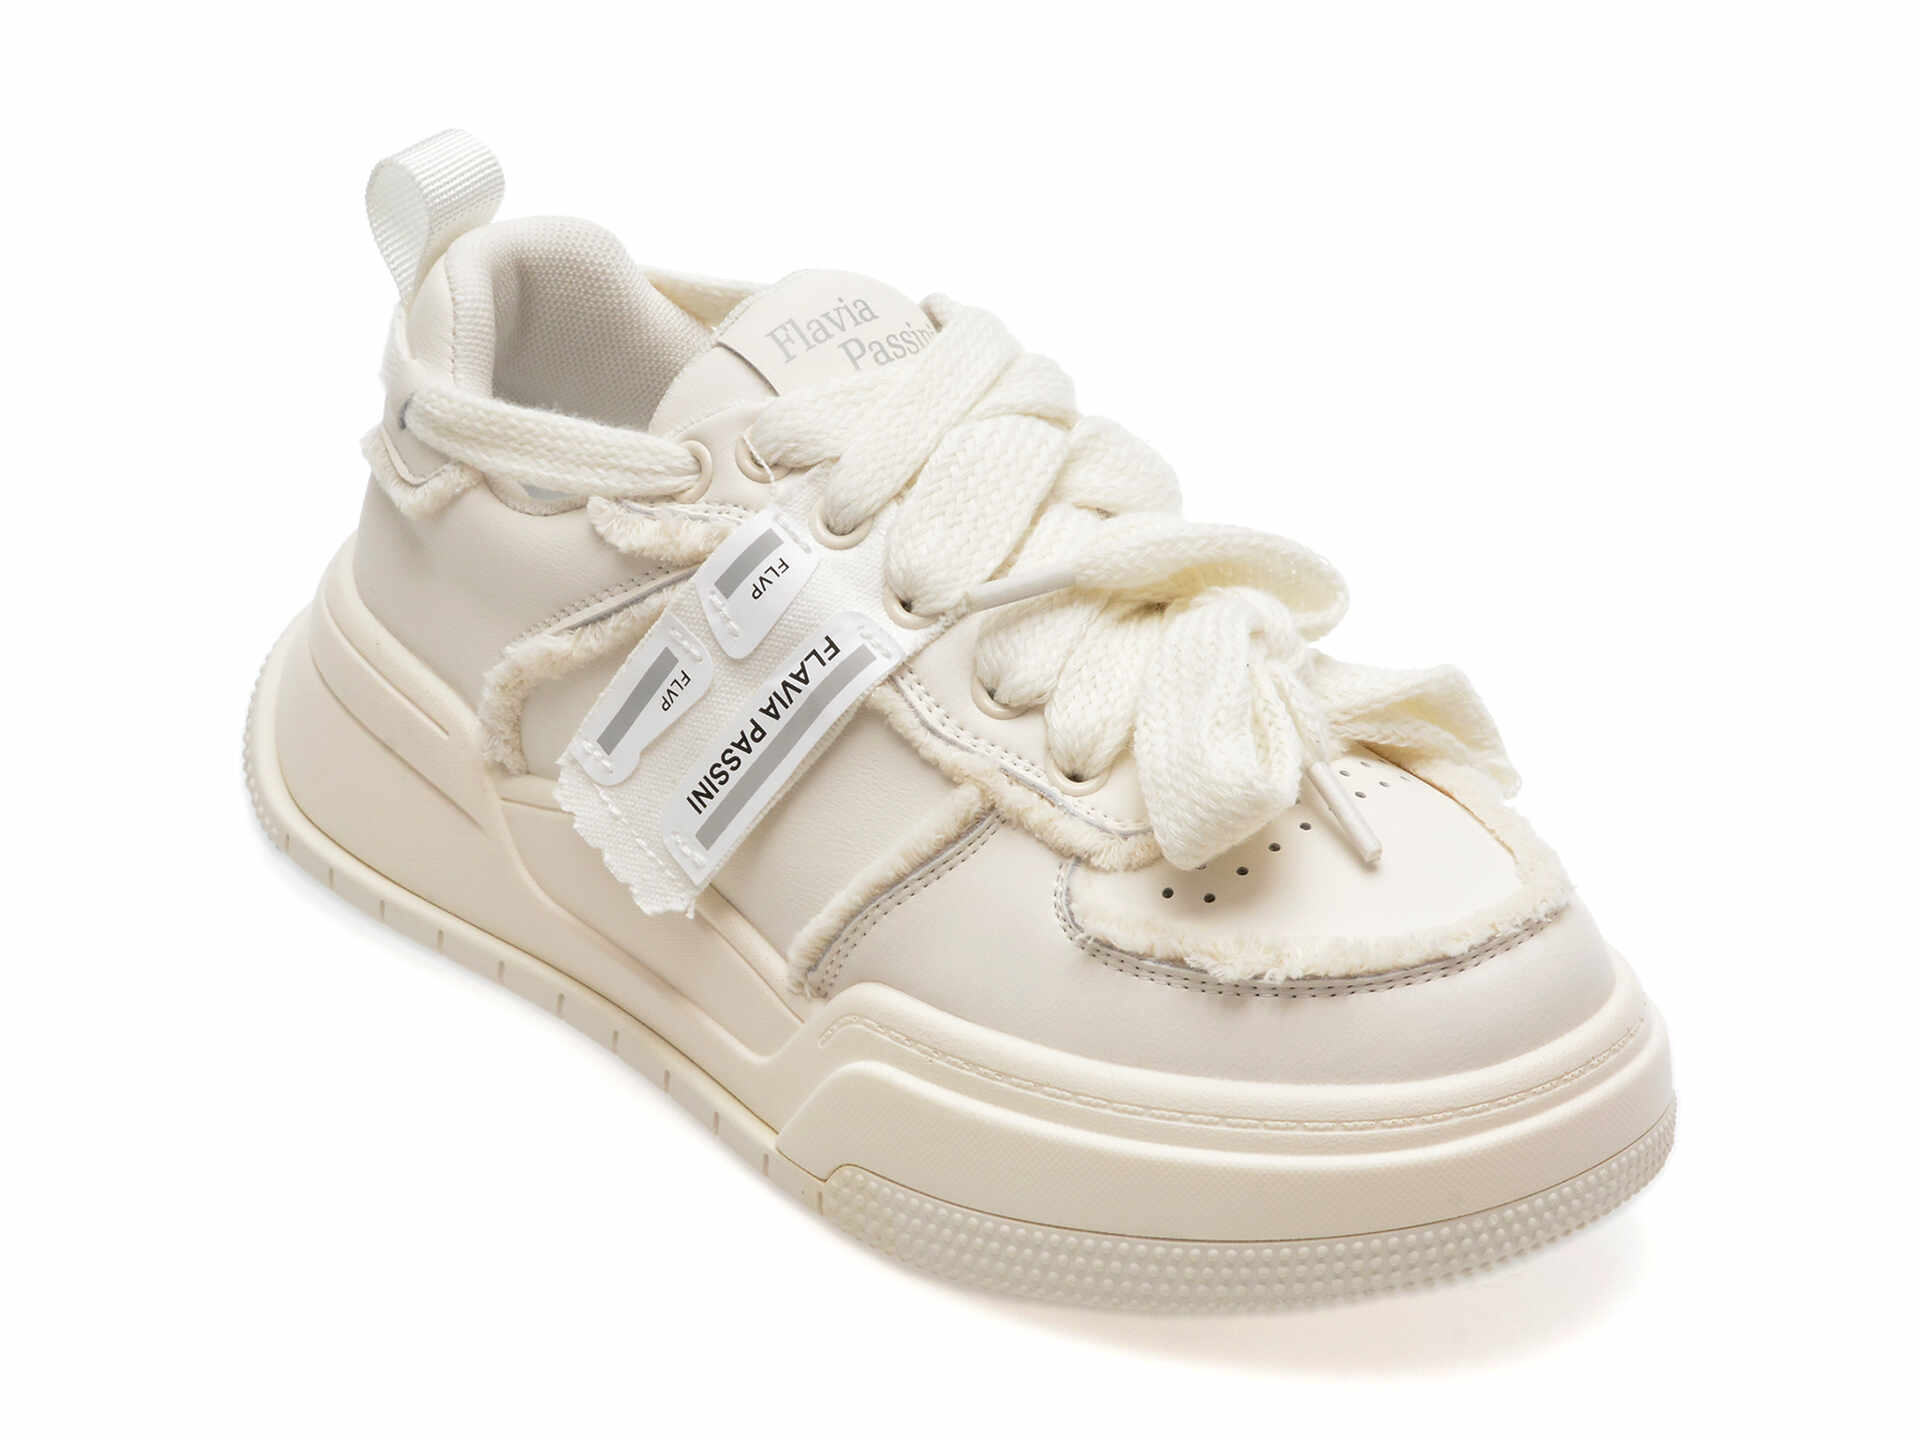 Pantofi casual FLAVIA PASSINI albi, 800226, din piele naturala